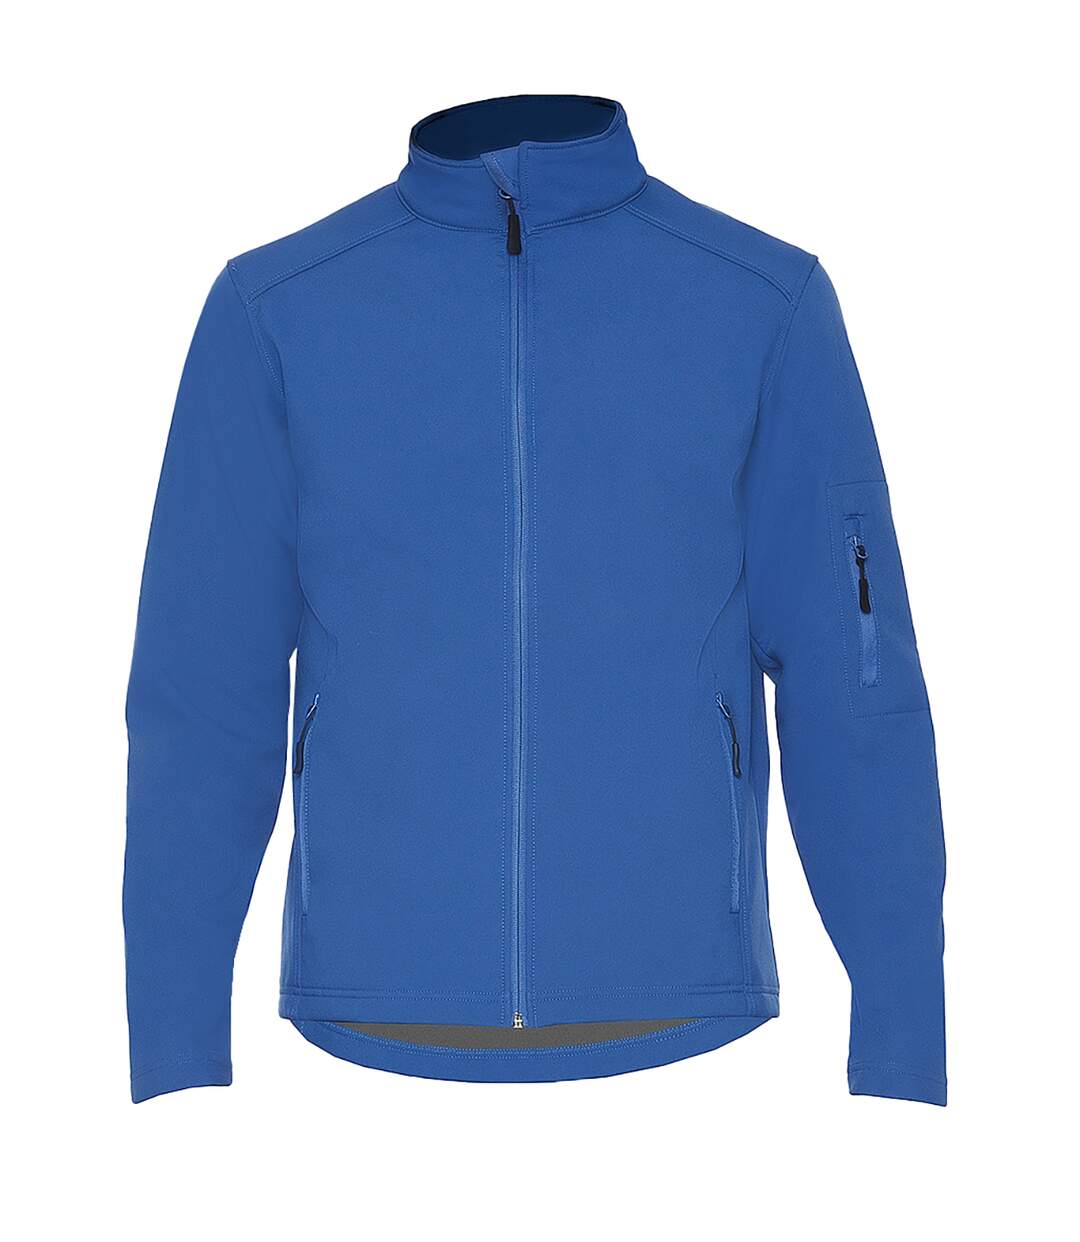 Gildan Mens Hammer Soft Shell Jacket (Royal Blue)